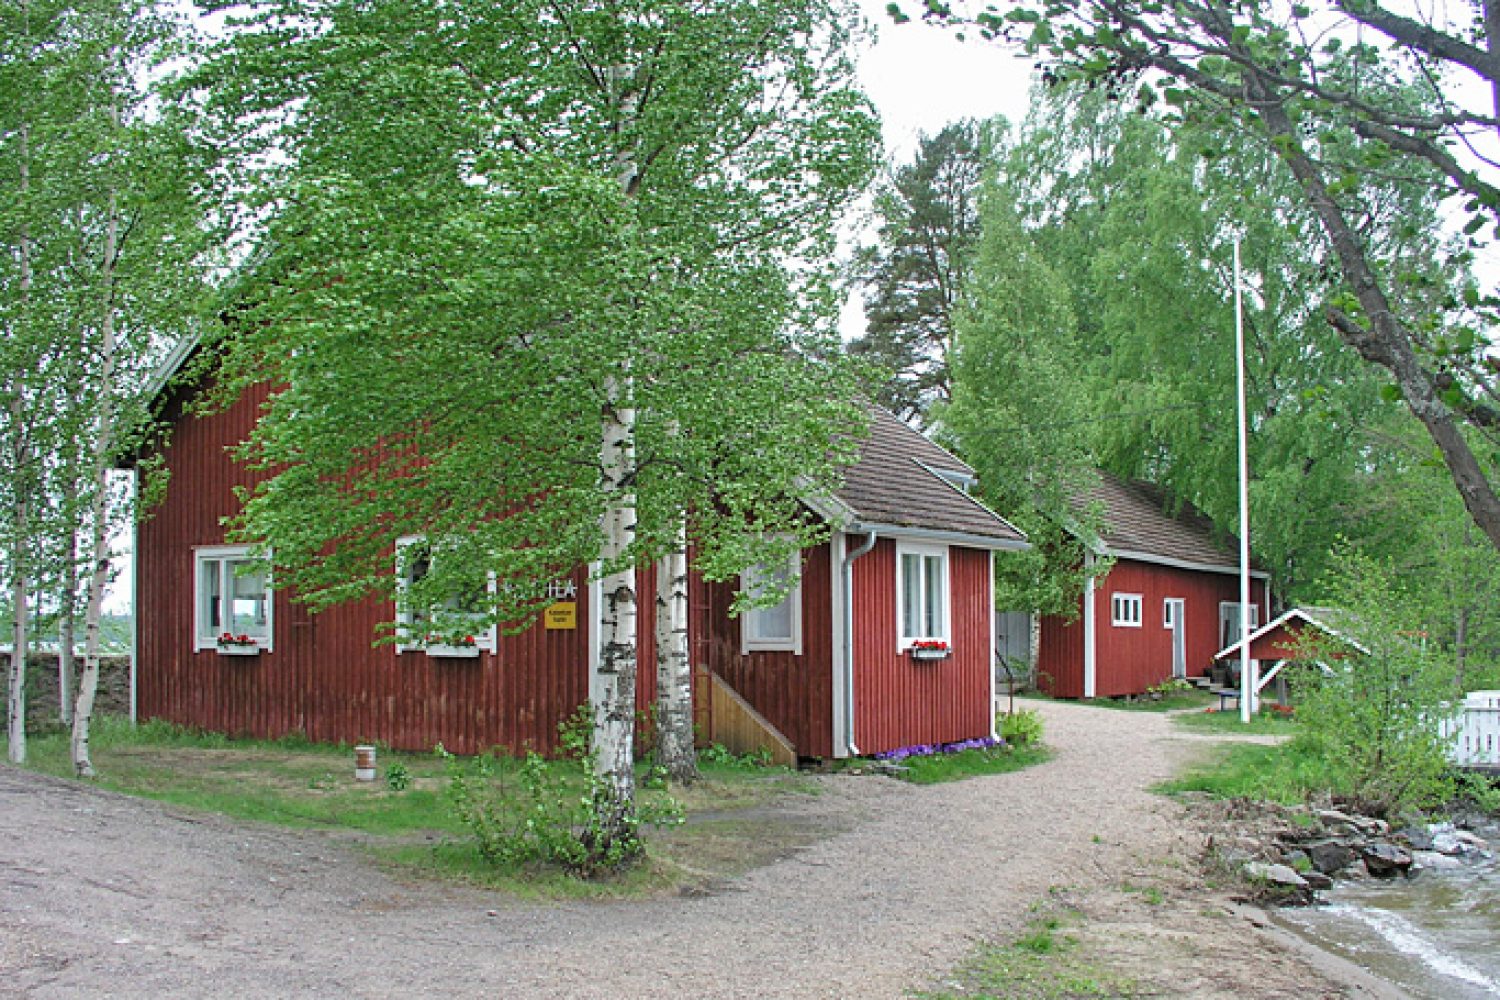 Koivujen keskellä on kaksi punaista puutaloa. Taloille johtaa polku ja näkyvissä on ranta.